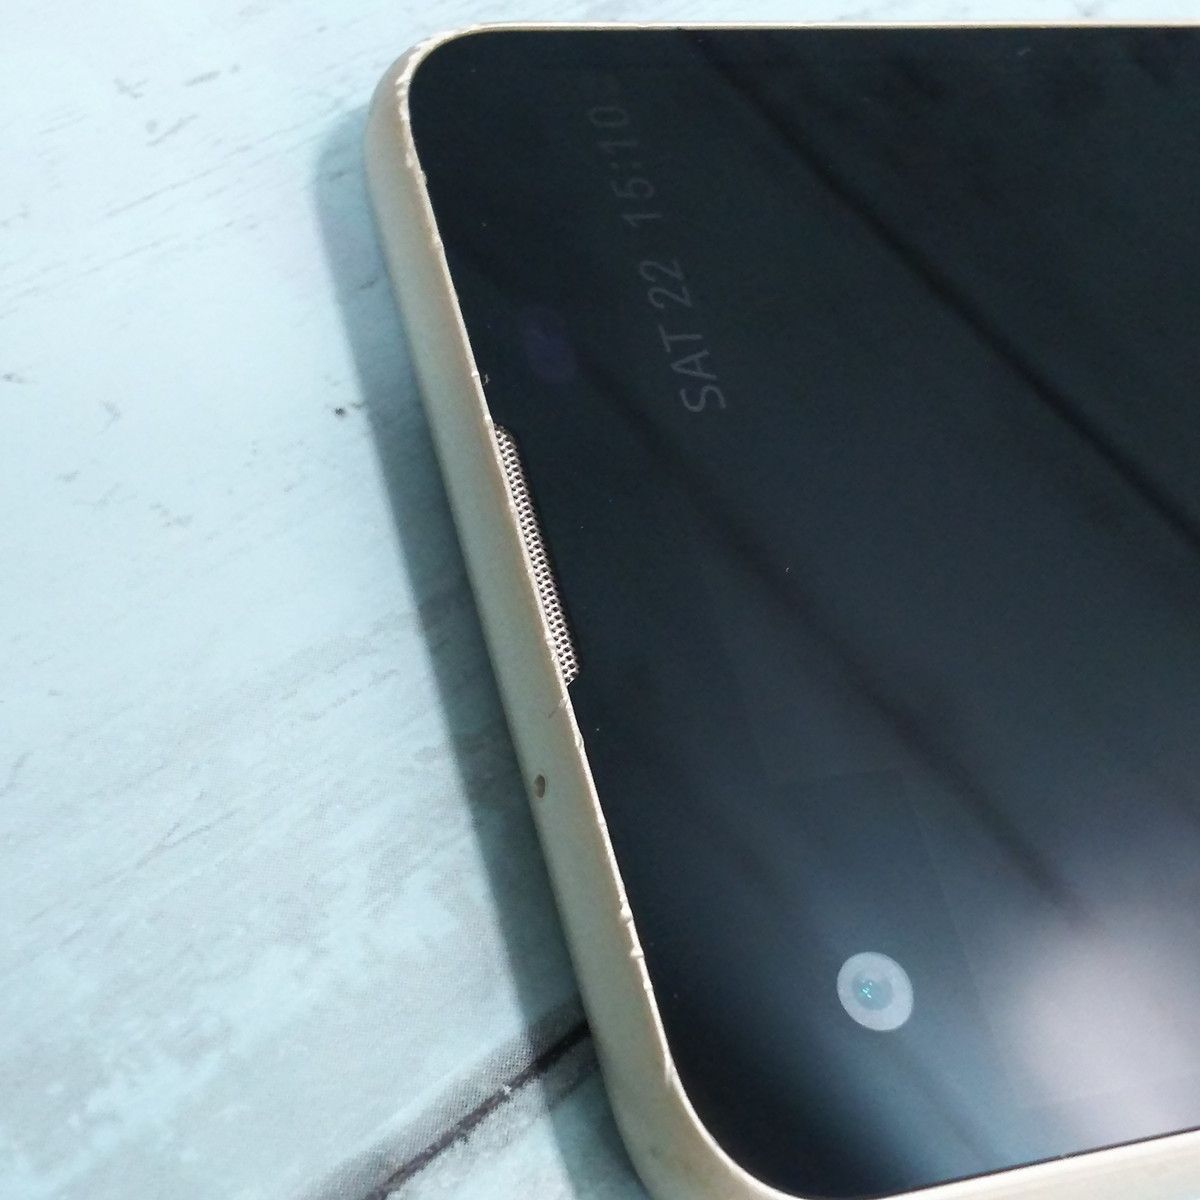 LG電子 LG X screen LGS02 Chanpaign gold J:COMモデル 本体 白ロム 